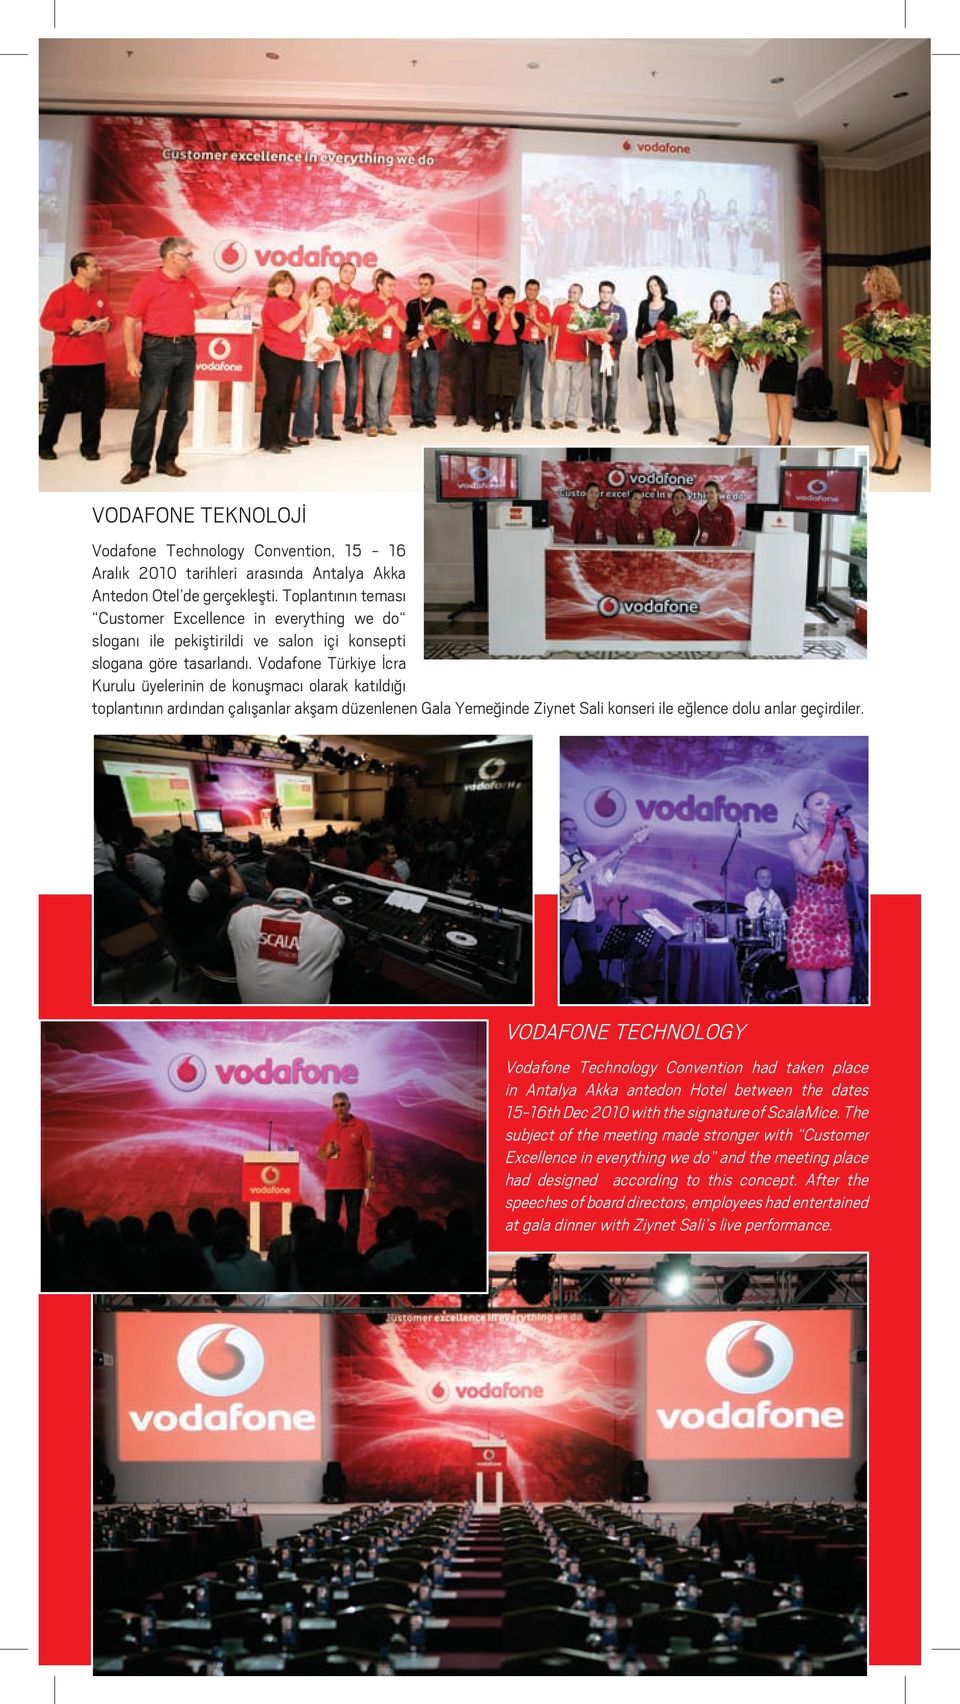 Vodafone Türkiye İcra Kurulu üyelerinin de konuşmacı olarak katıldığı toplantının ardından çalışanlar akşam düzenlenen Gala Yemeğinde Ziynet Sali konseri ile eğlence dolu anlar geçirdiler.